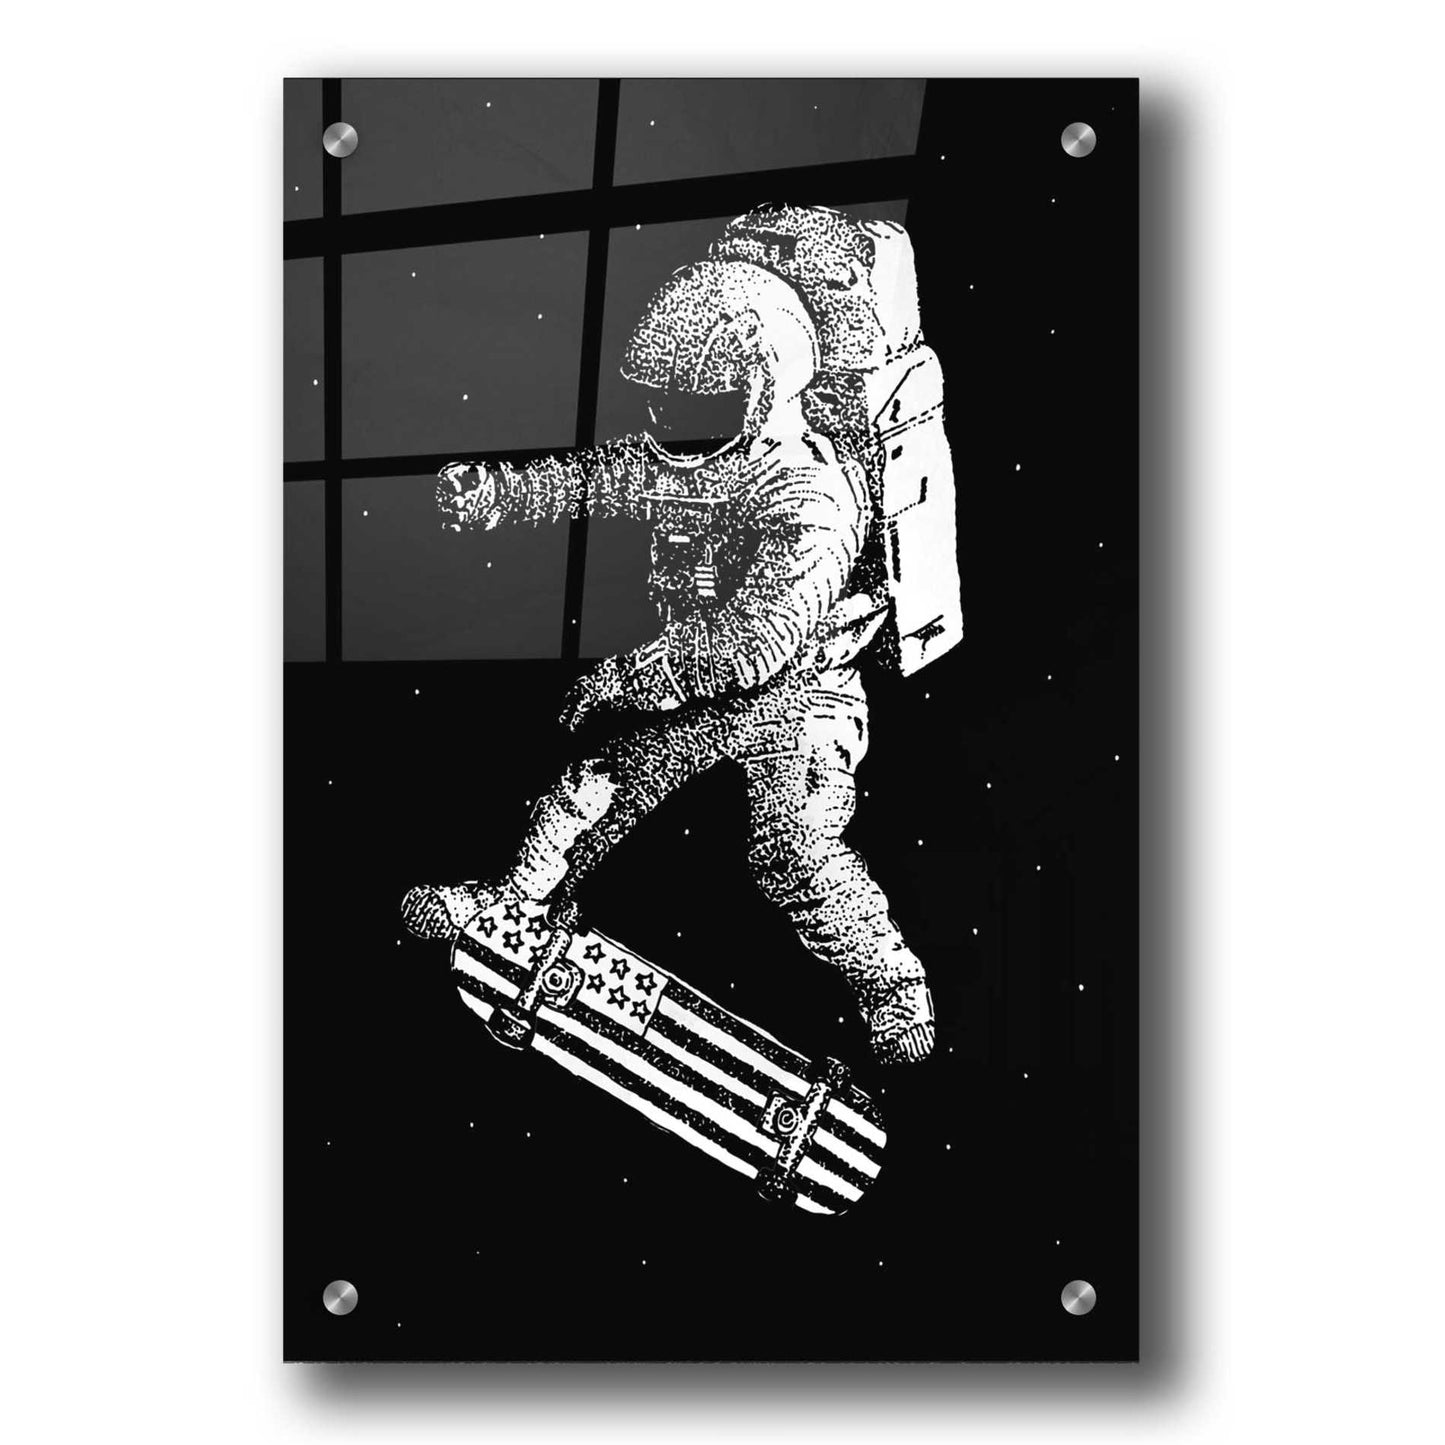 Epic Art 'Kickflip in Space' by Robert Farkas, Acrylic Glass Wall Art,24x36